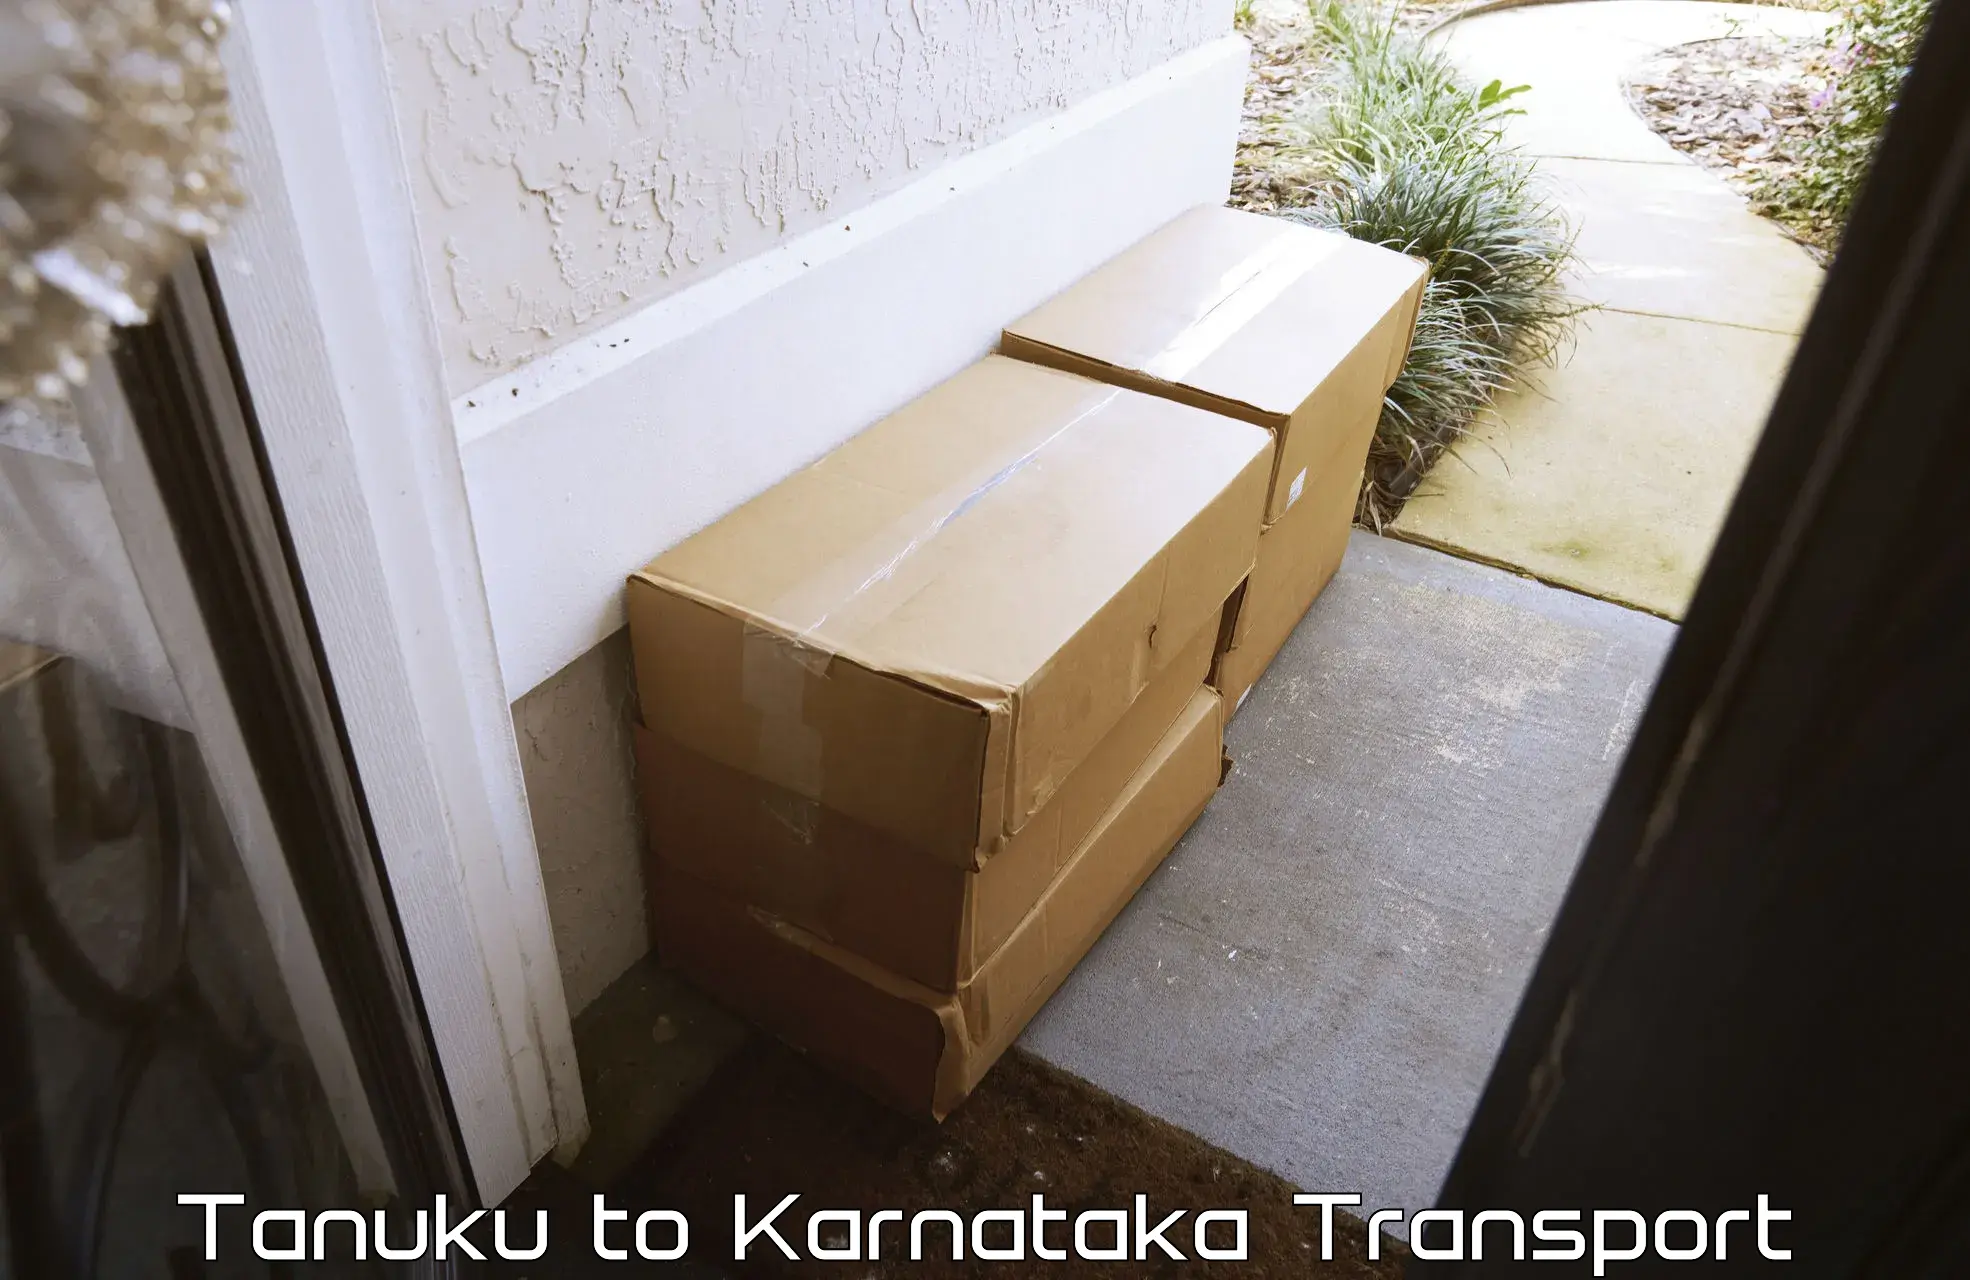 Transport in sharing Tanuku to Karnataka